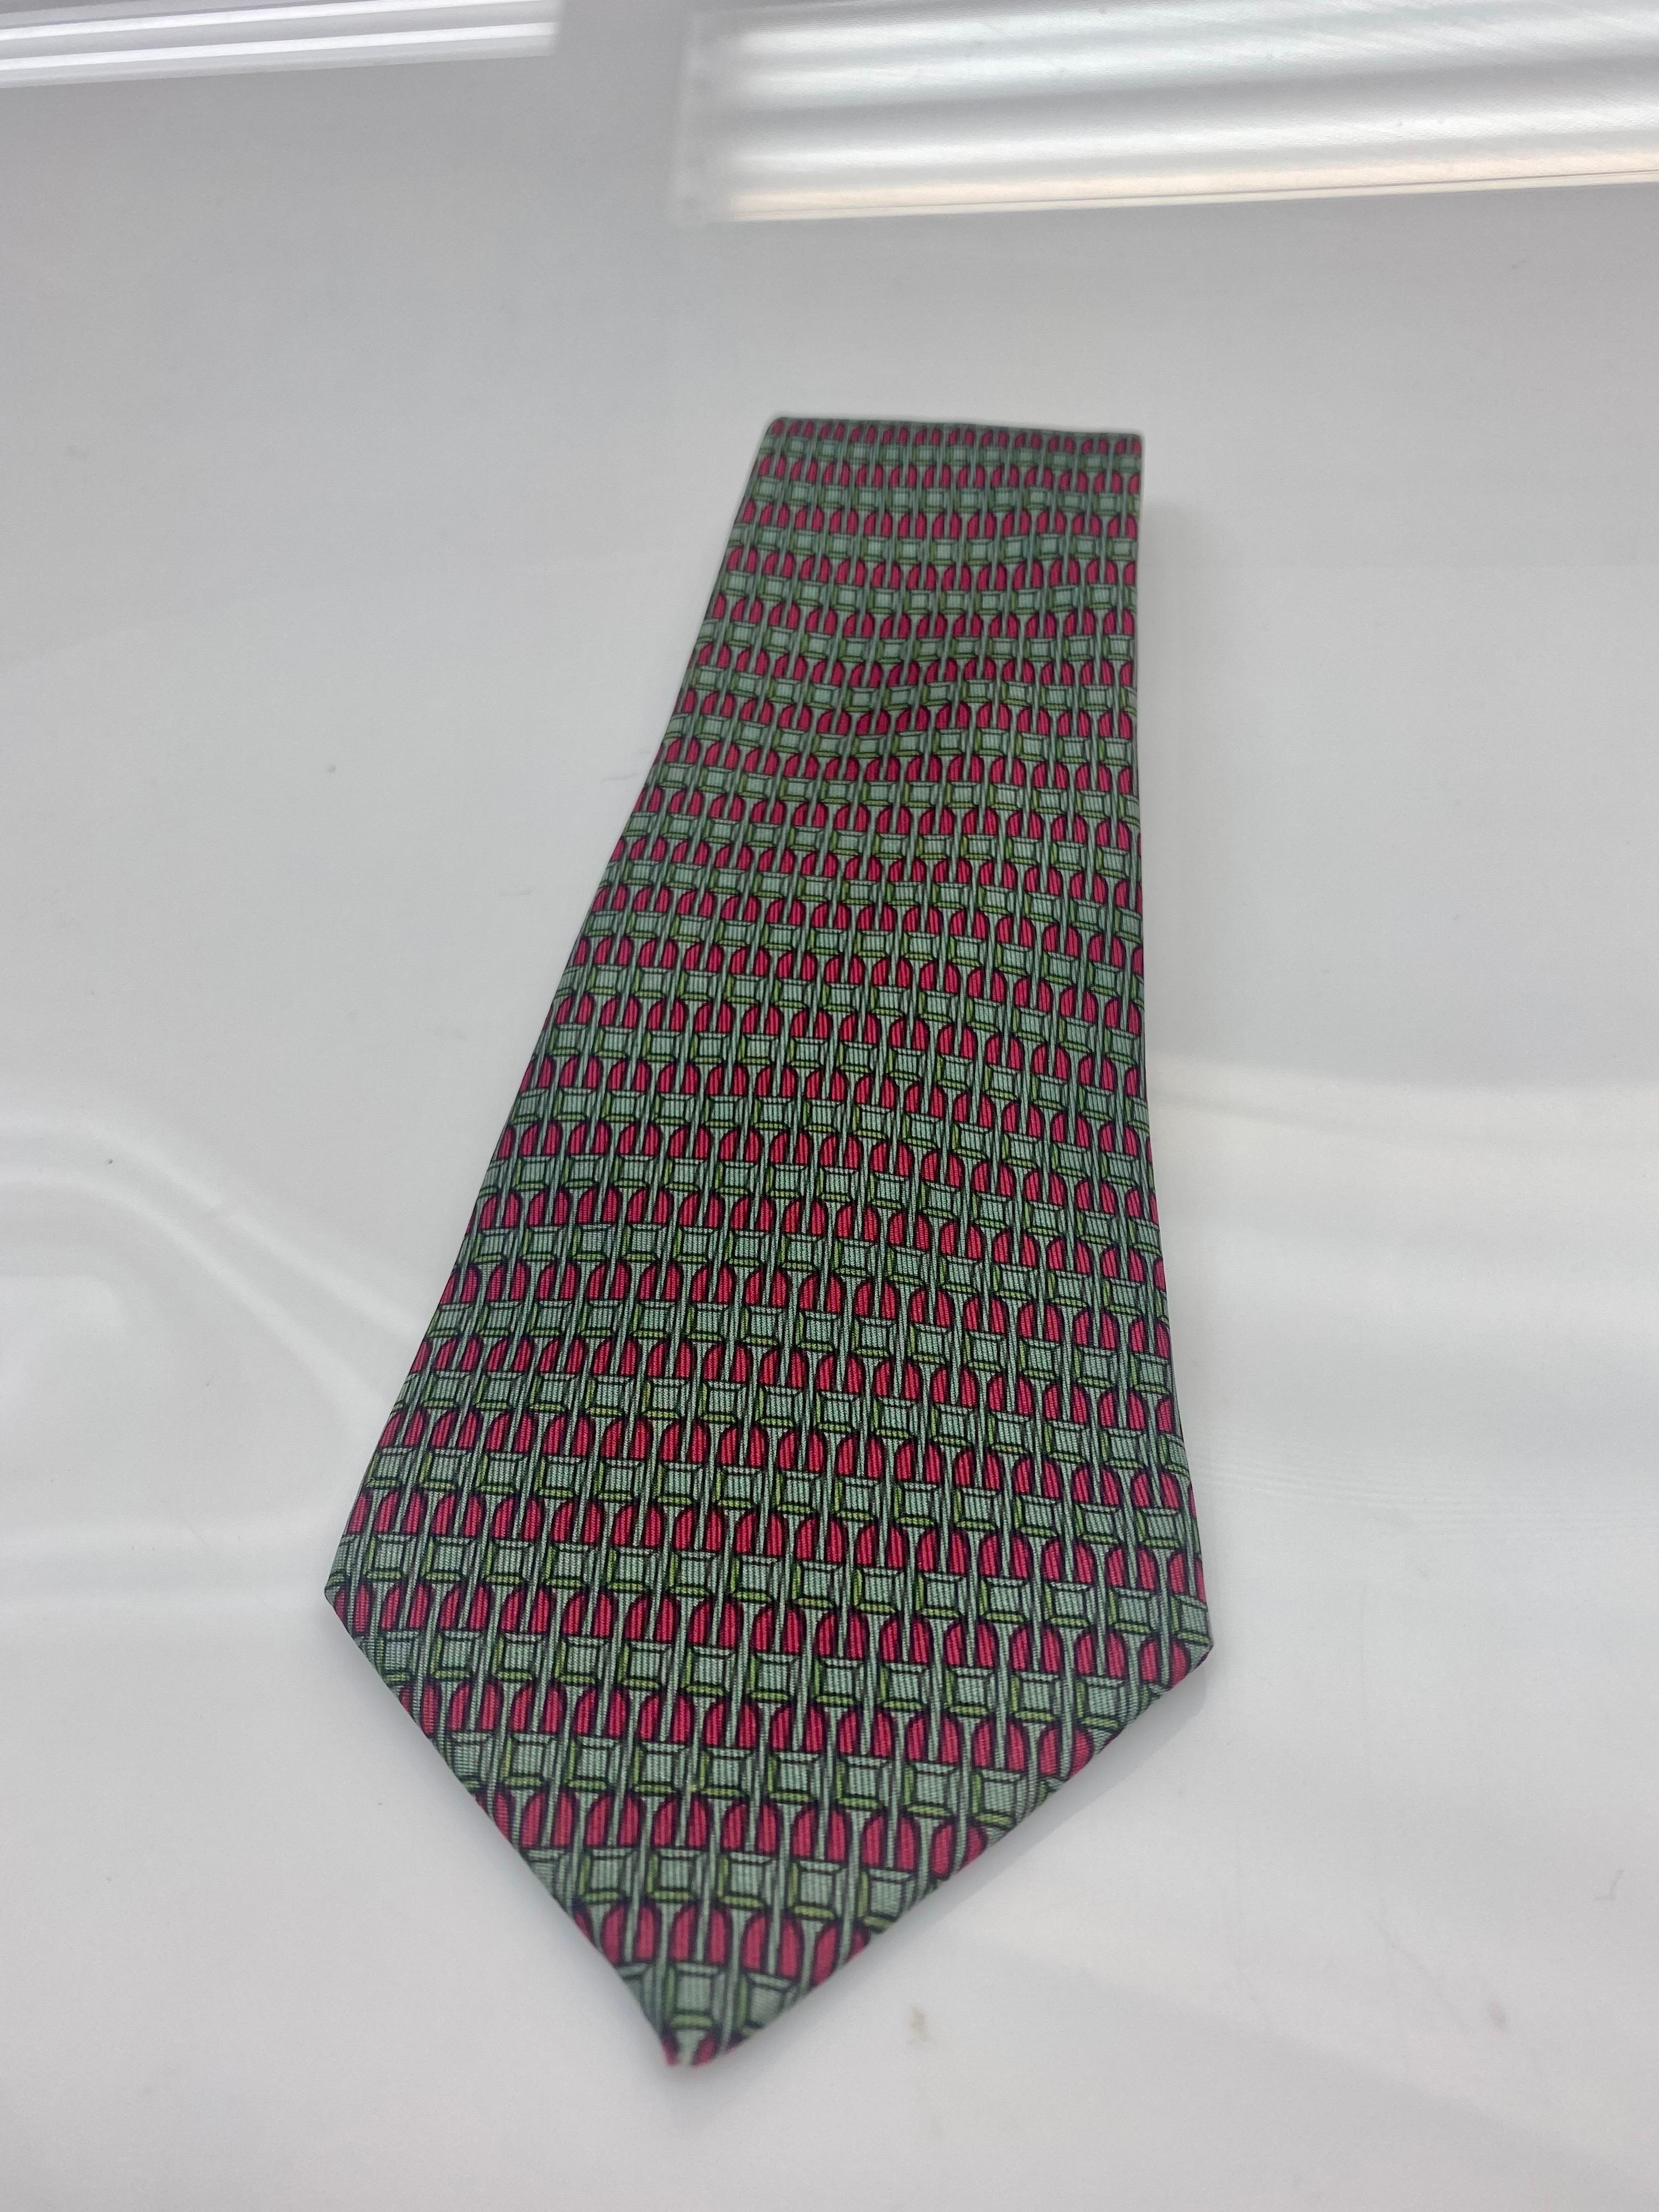 Cravate Hermes en soie à imprimé carré rouge et vert.
Une pièce classique et sophistiquée qui s'ajoute parfaitement à toute garde-robe. La NO AGE est en bon état, l'usure correspond à l'âge. 

Largeur : 3.5